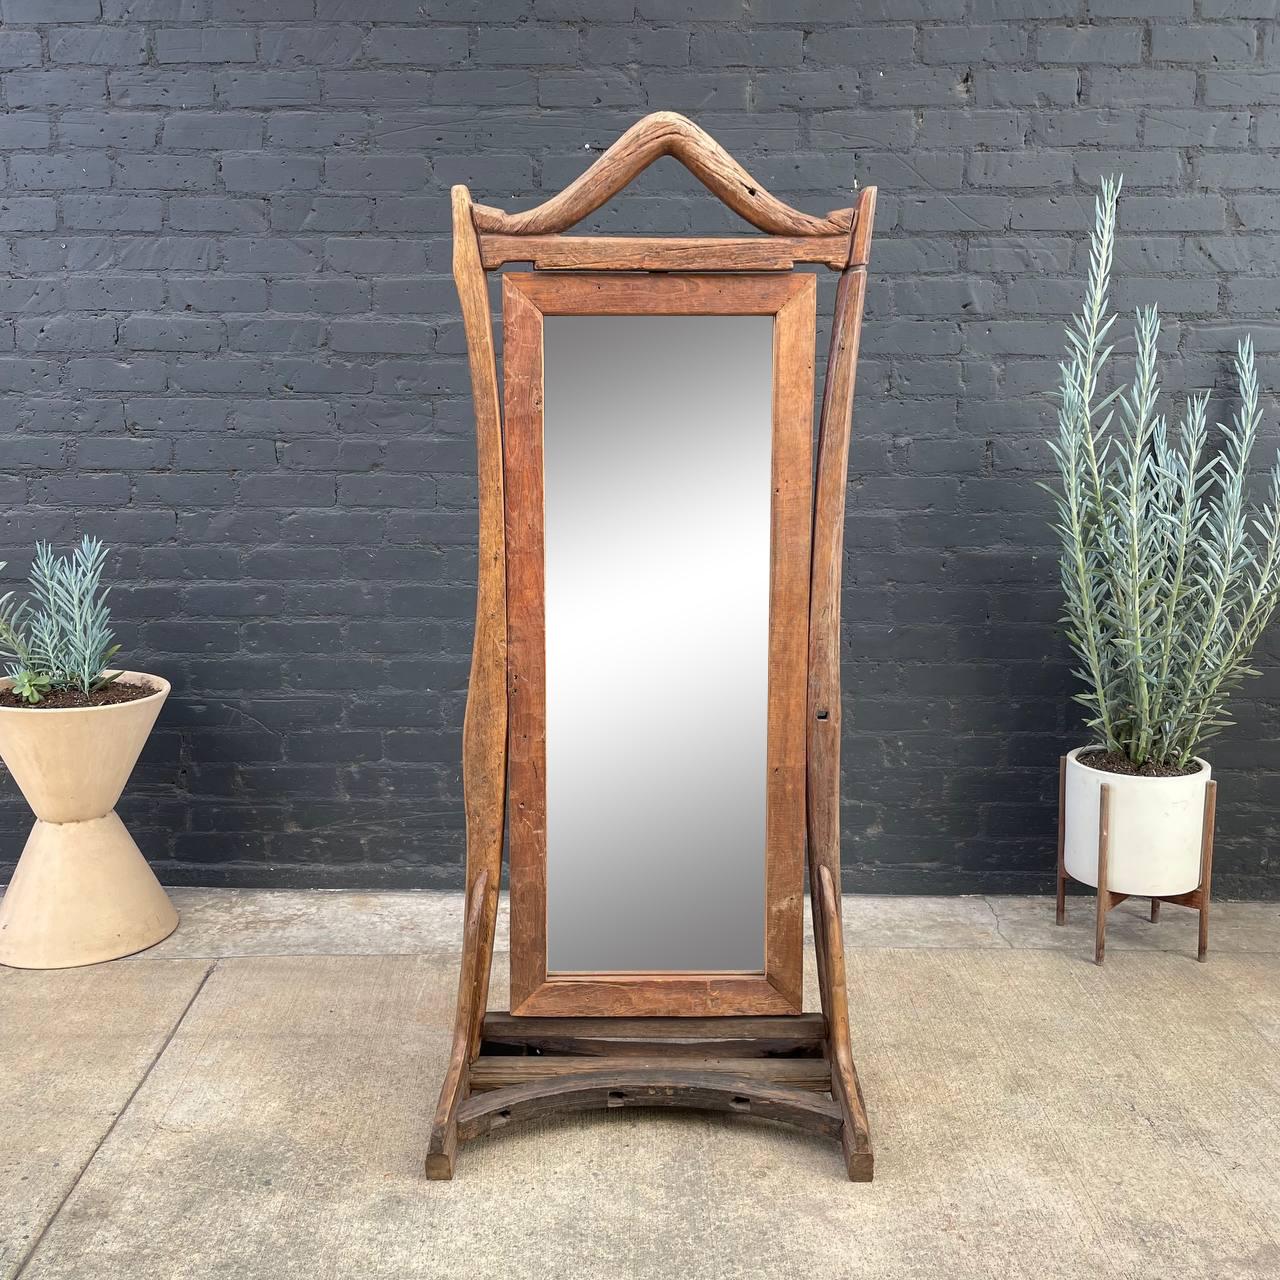 Vintage rustic free-standing wood dressing mirror.
 